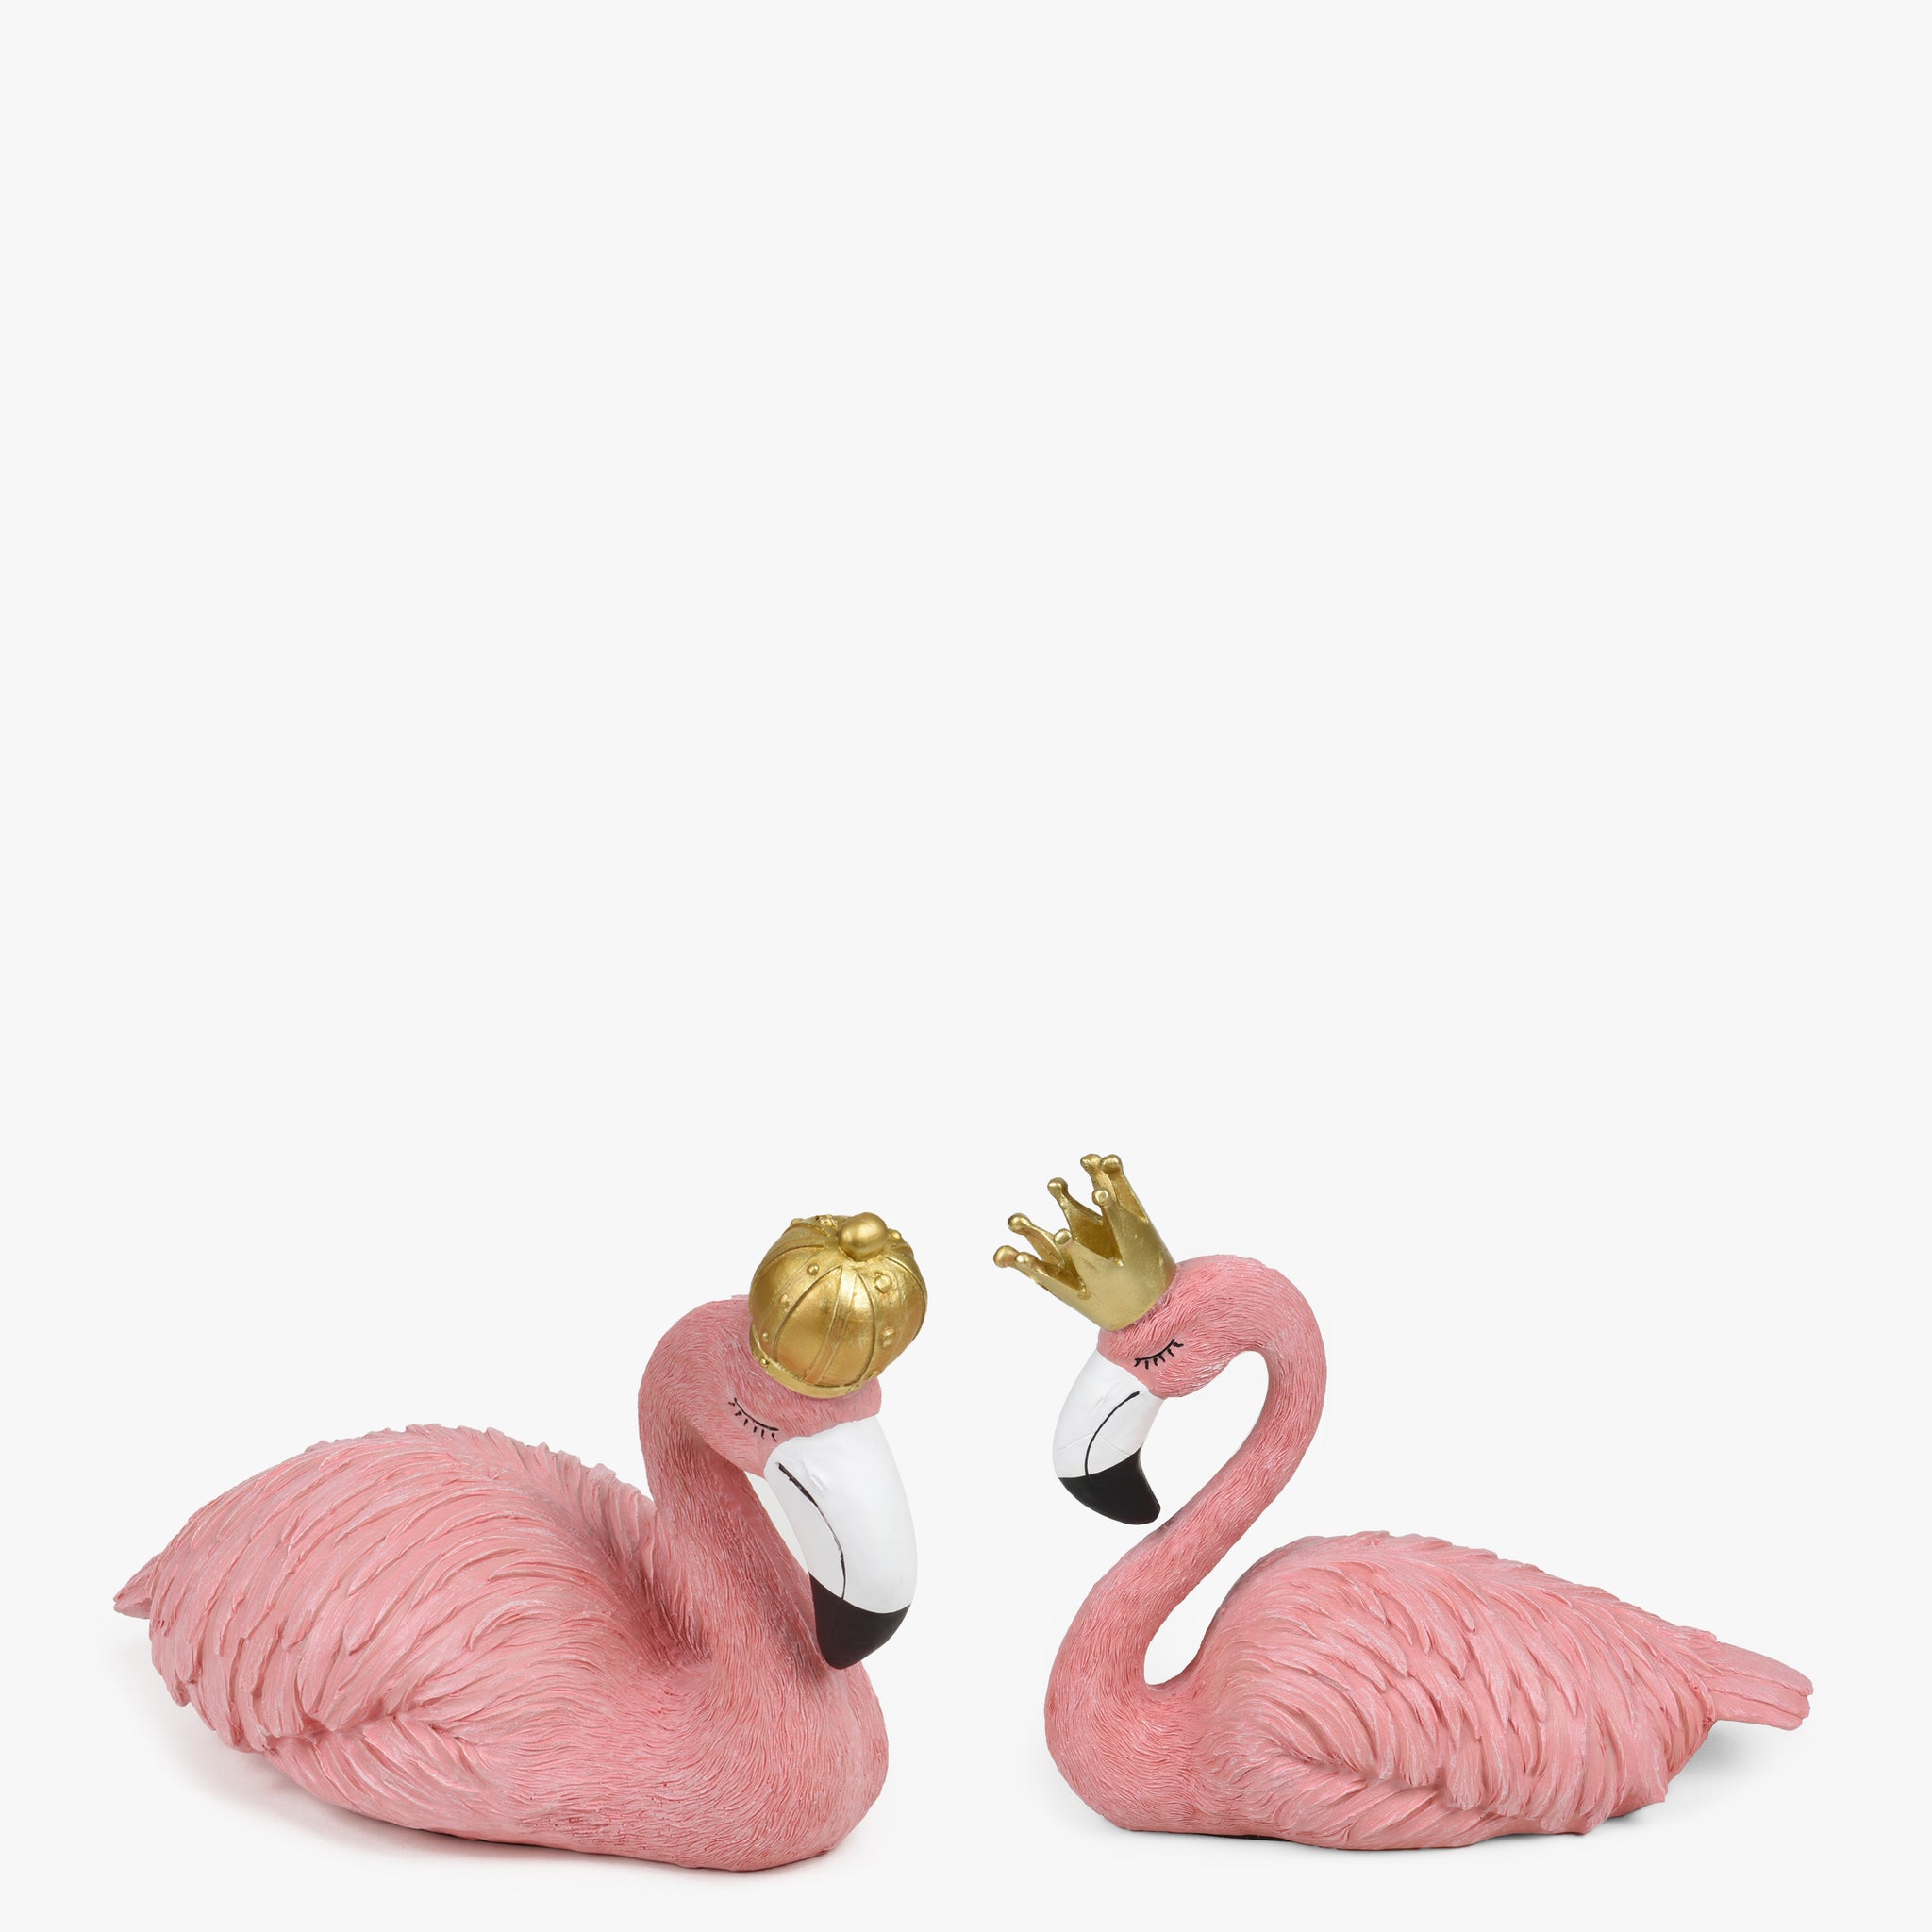 Tropical Flamingo Sculpture (Set Of 2)